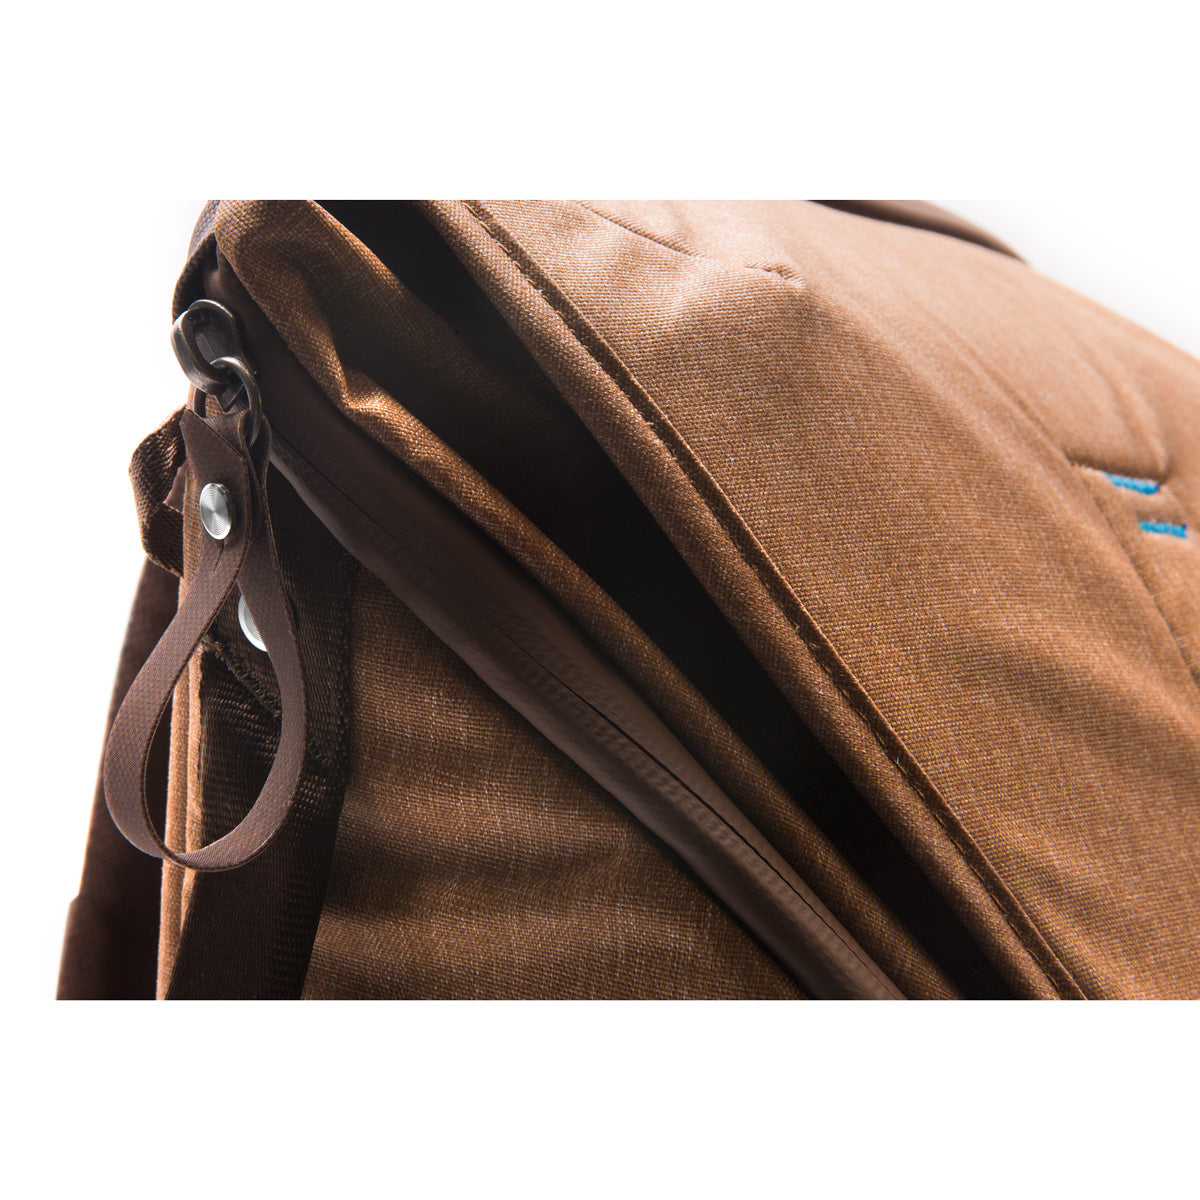 Peak Design Everyday Backpack 20L - Tan